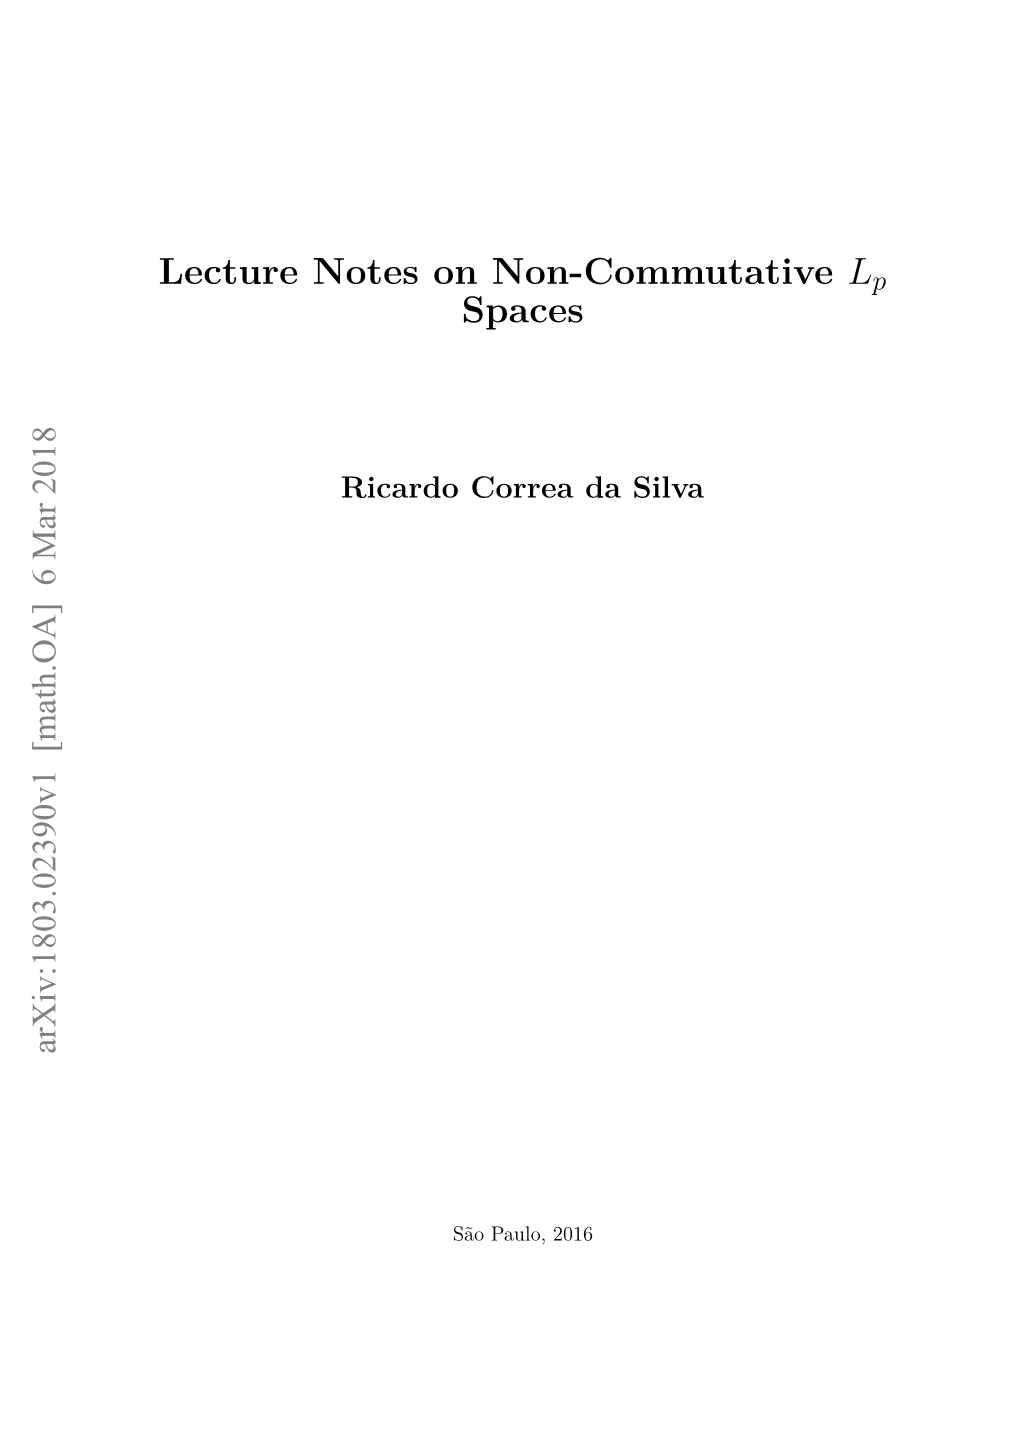 Lecture Notes on Noncommutative Lp Spaces